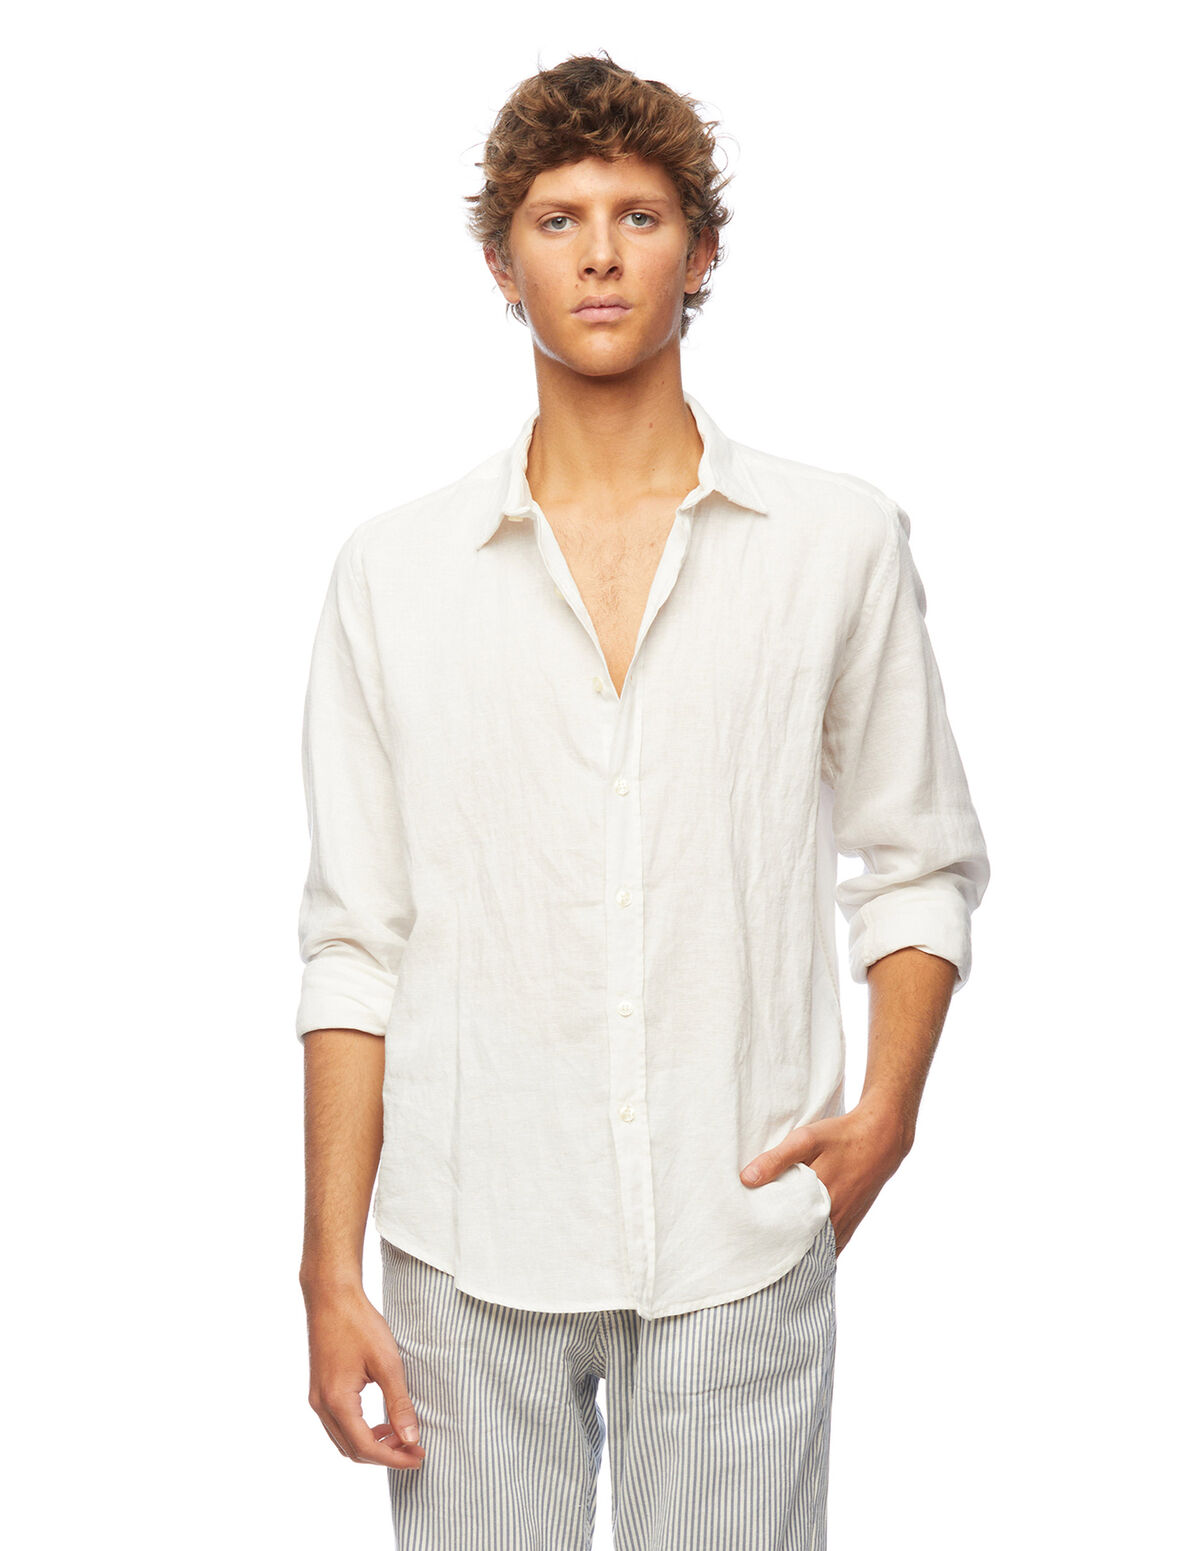 Camisa cuello pico lino blanco - Camisas - Nícoli